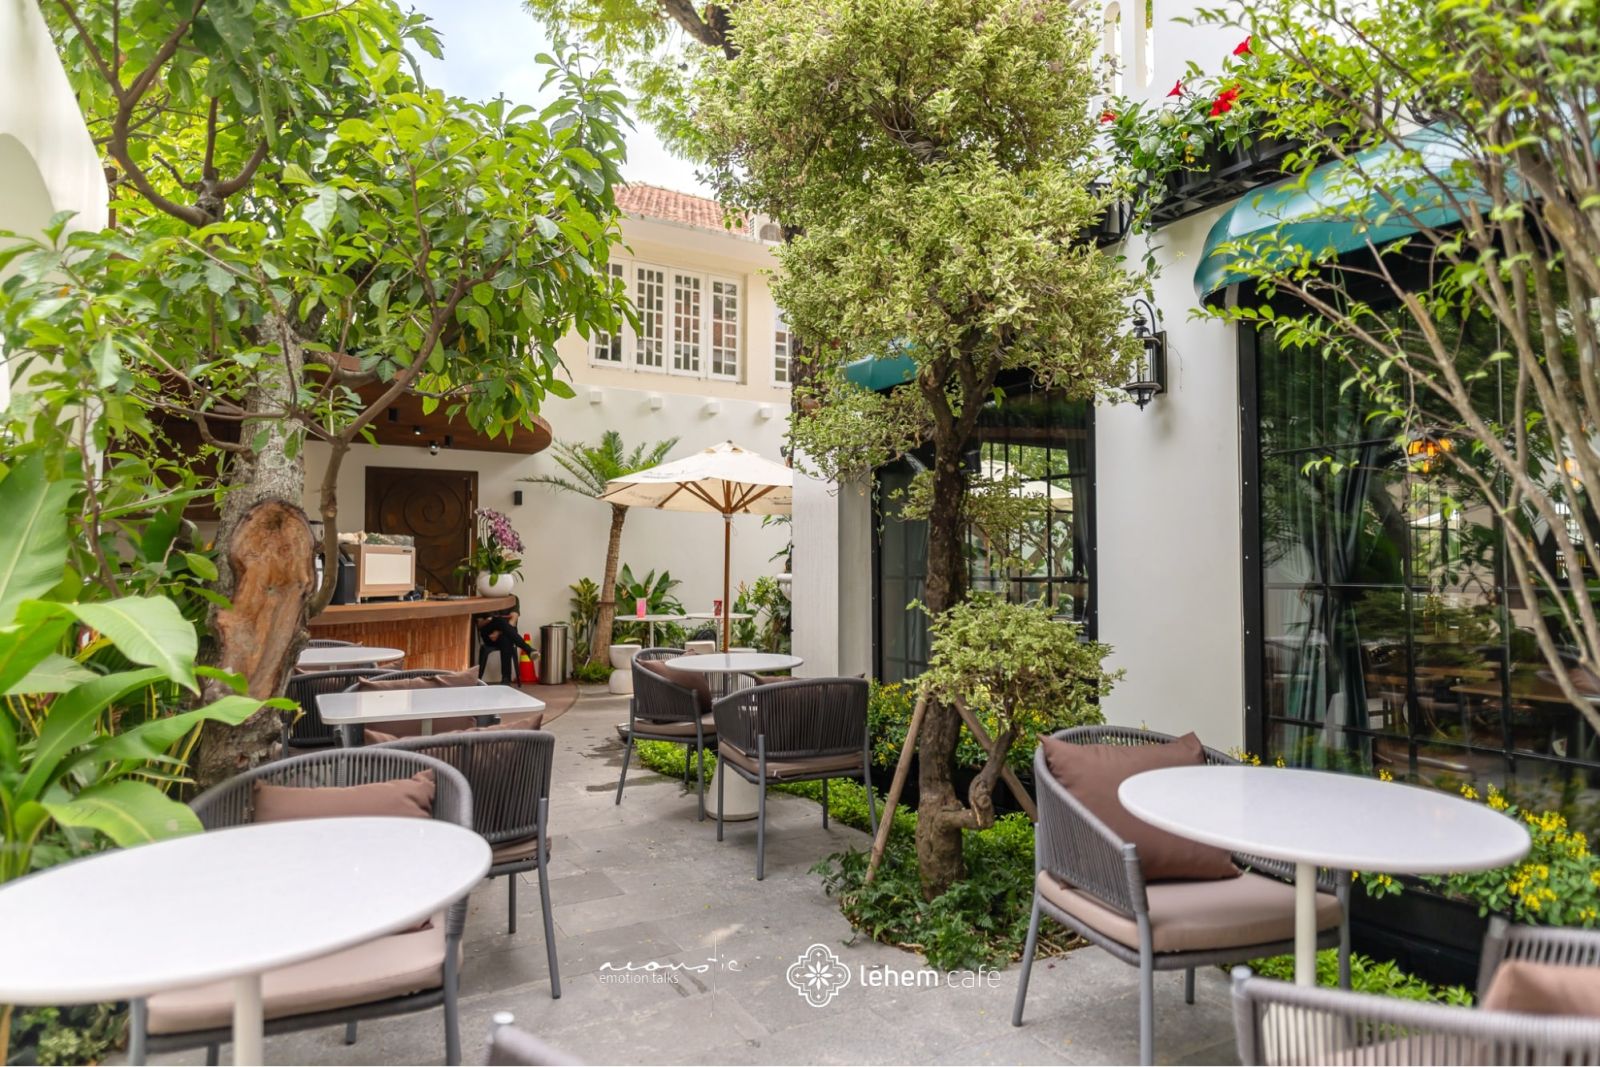 Léhem Café được Phong Cách Mộc thiết kế với không gian mở